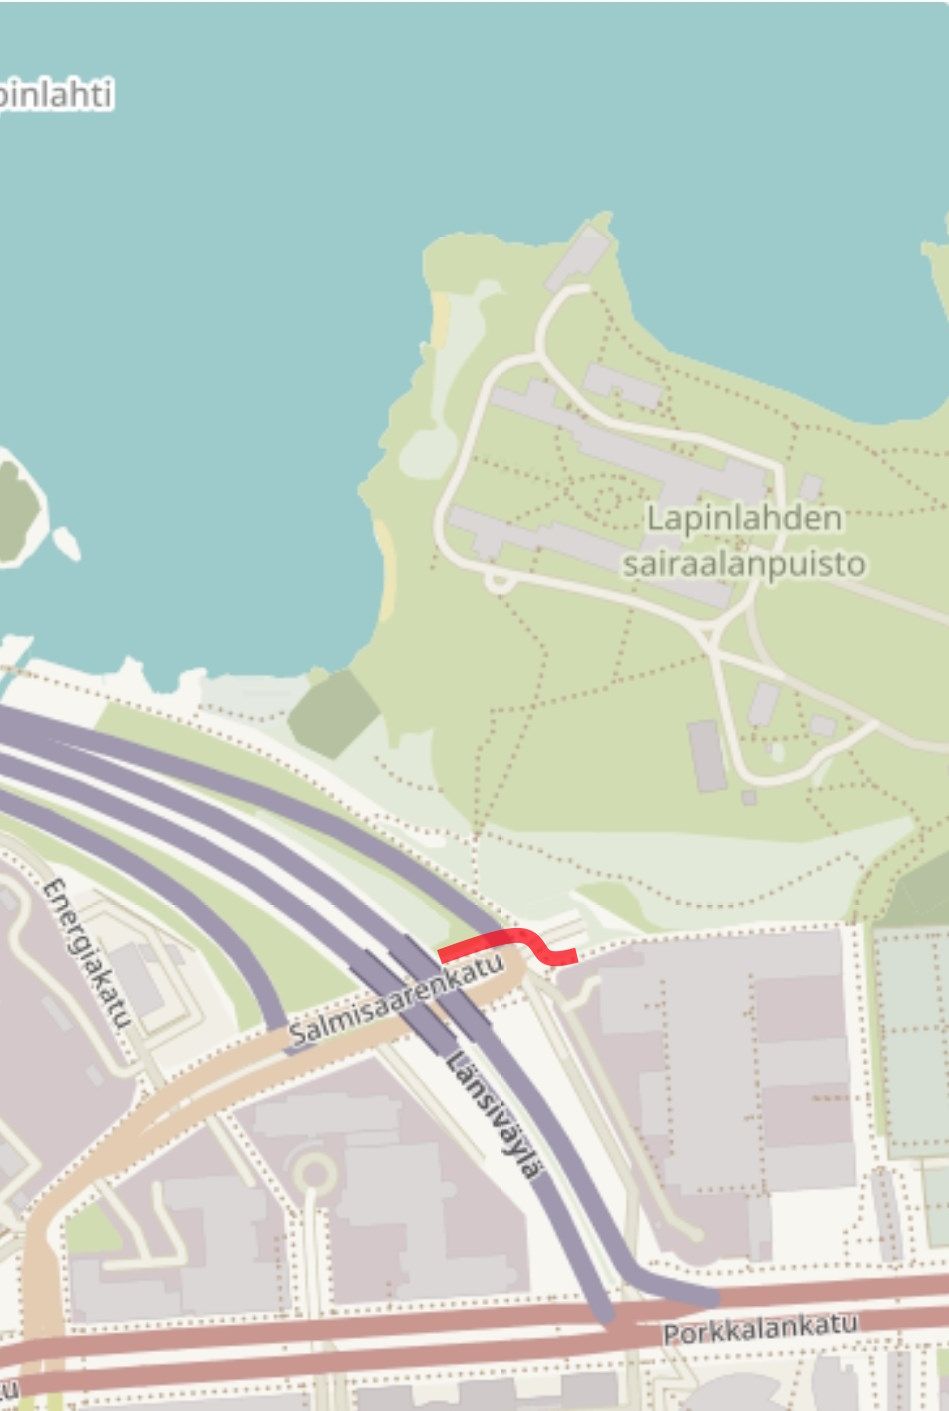 Karttakuva nykyisestä tilanteesta. Punaisella korostuksella on merkitty poistuva suojatie, joka veisi kätevästi Salmisaarenkadun pohjoispuolella olevalle jalkakäytävälle ja pyörätielle.